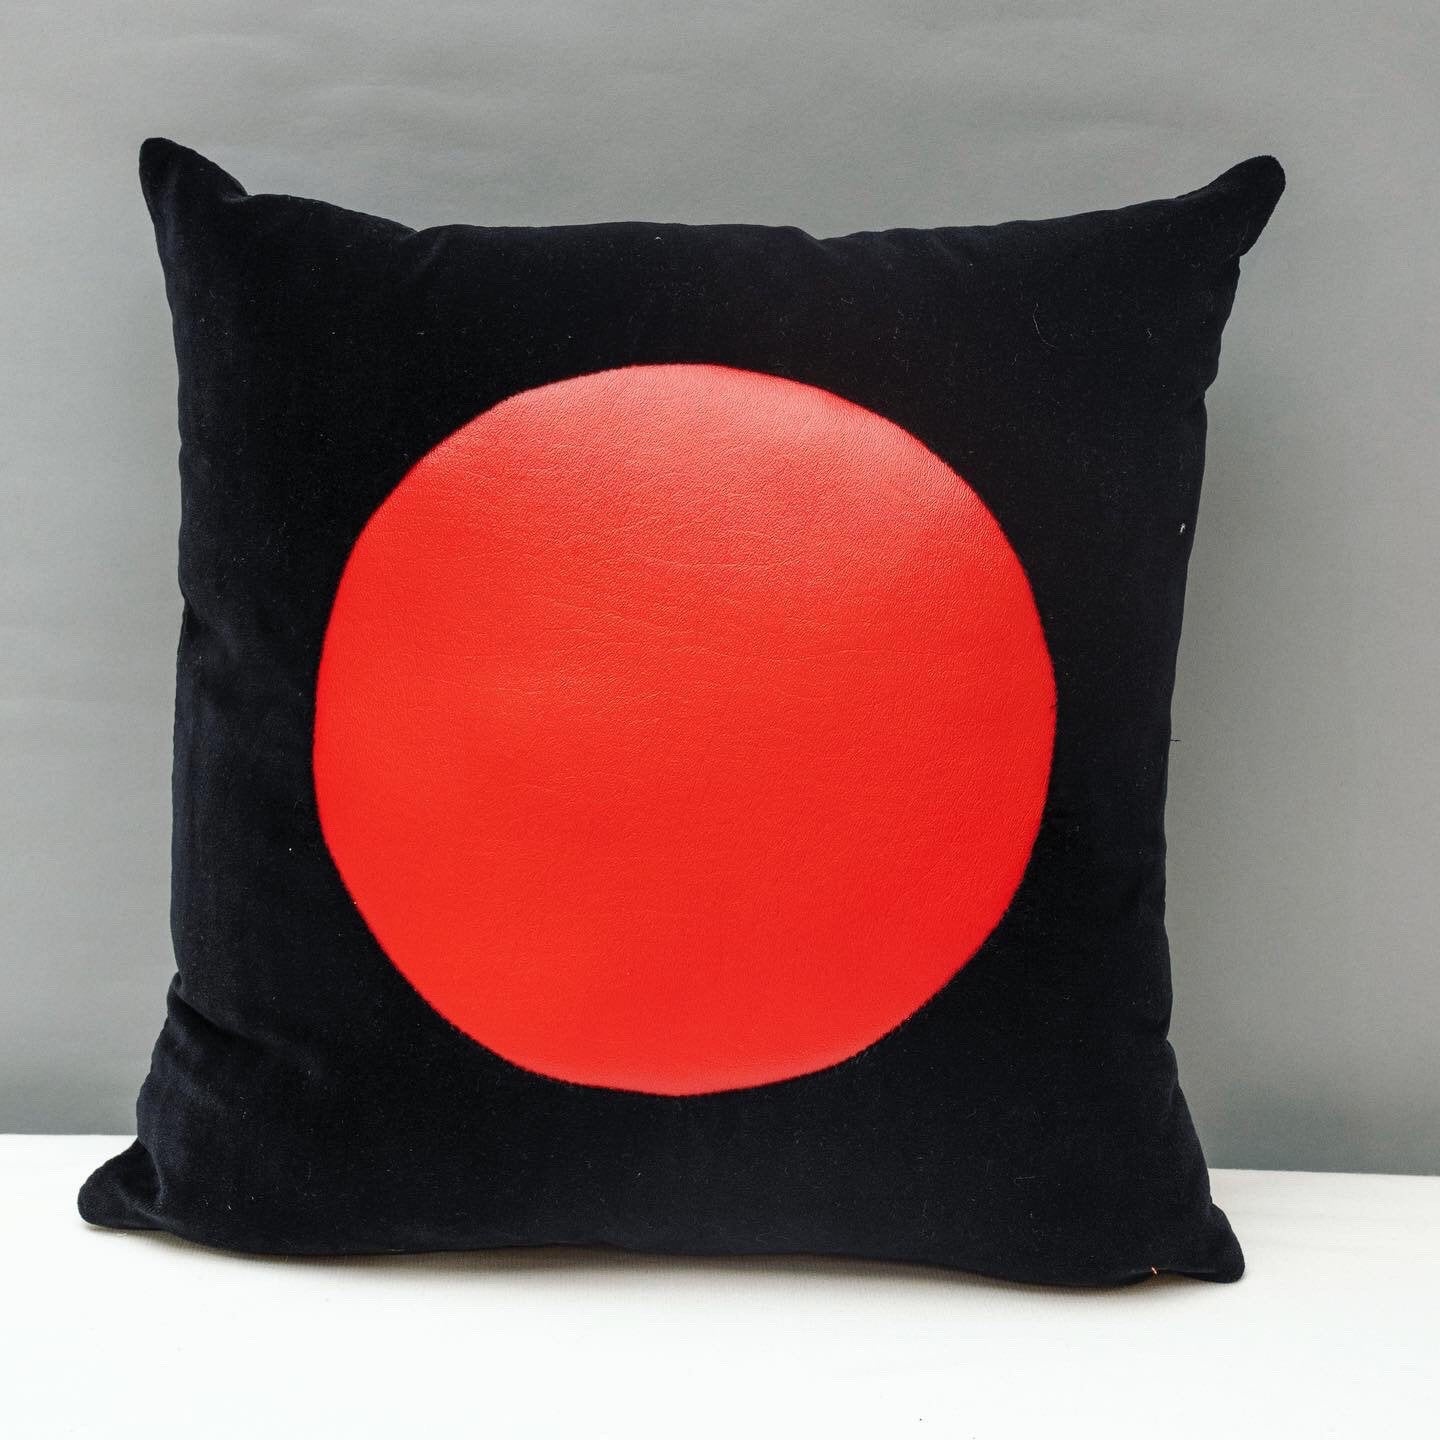 Black velvet geometric handmade pillow 16 x 16” inches